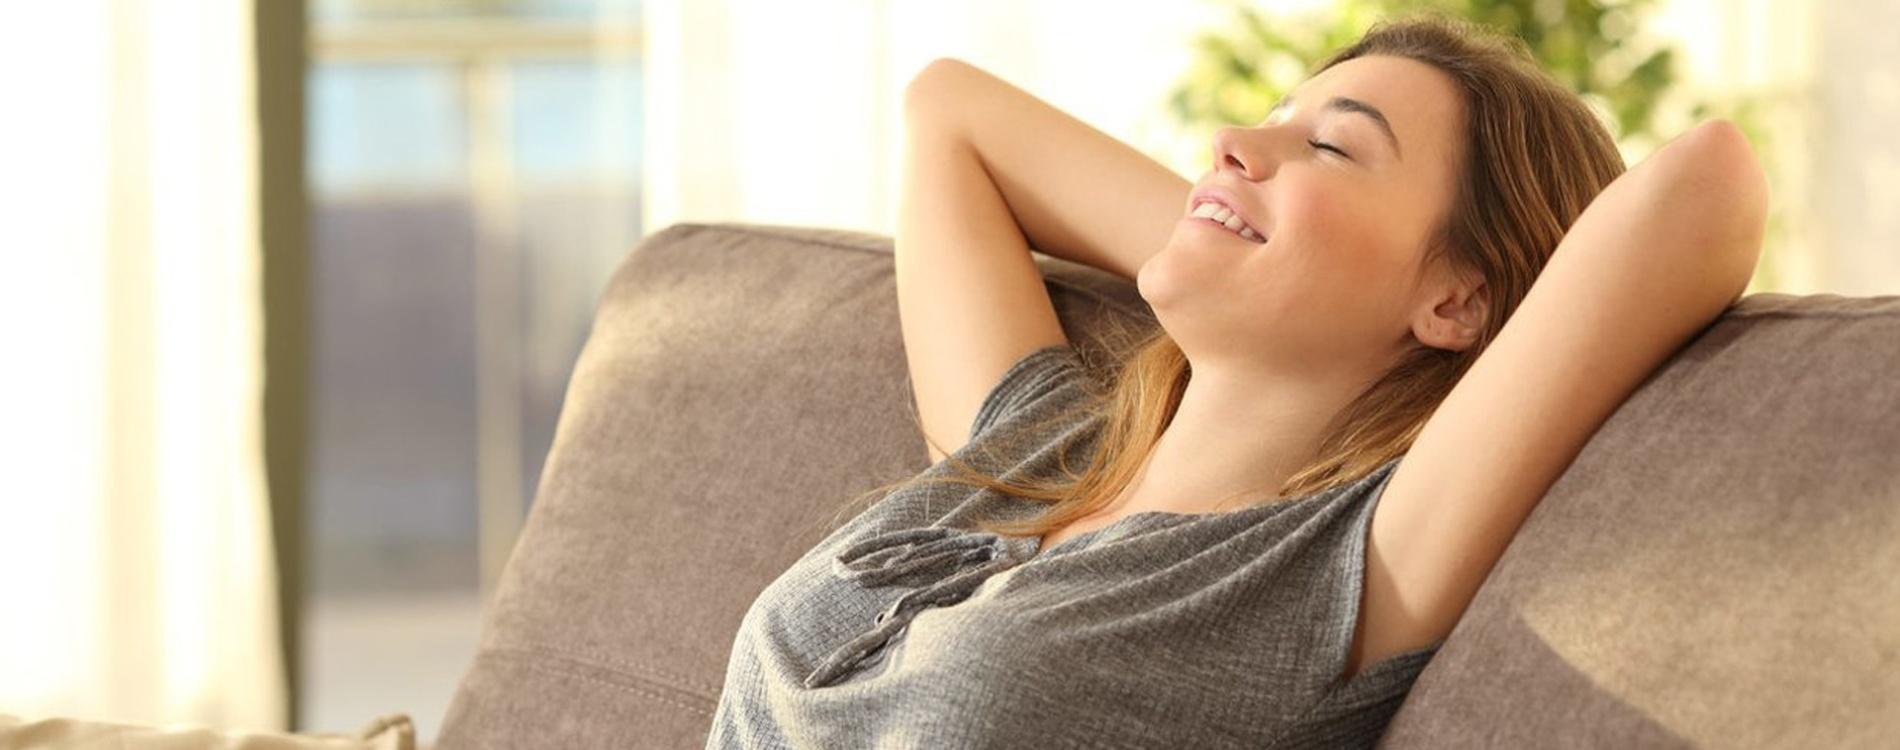  Kvinne opplev komfort med ewt og slapper av i sofa